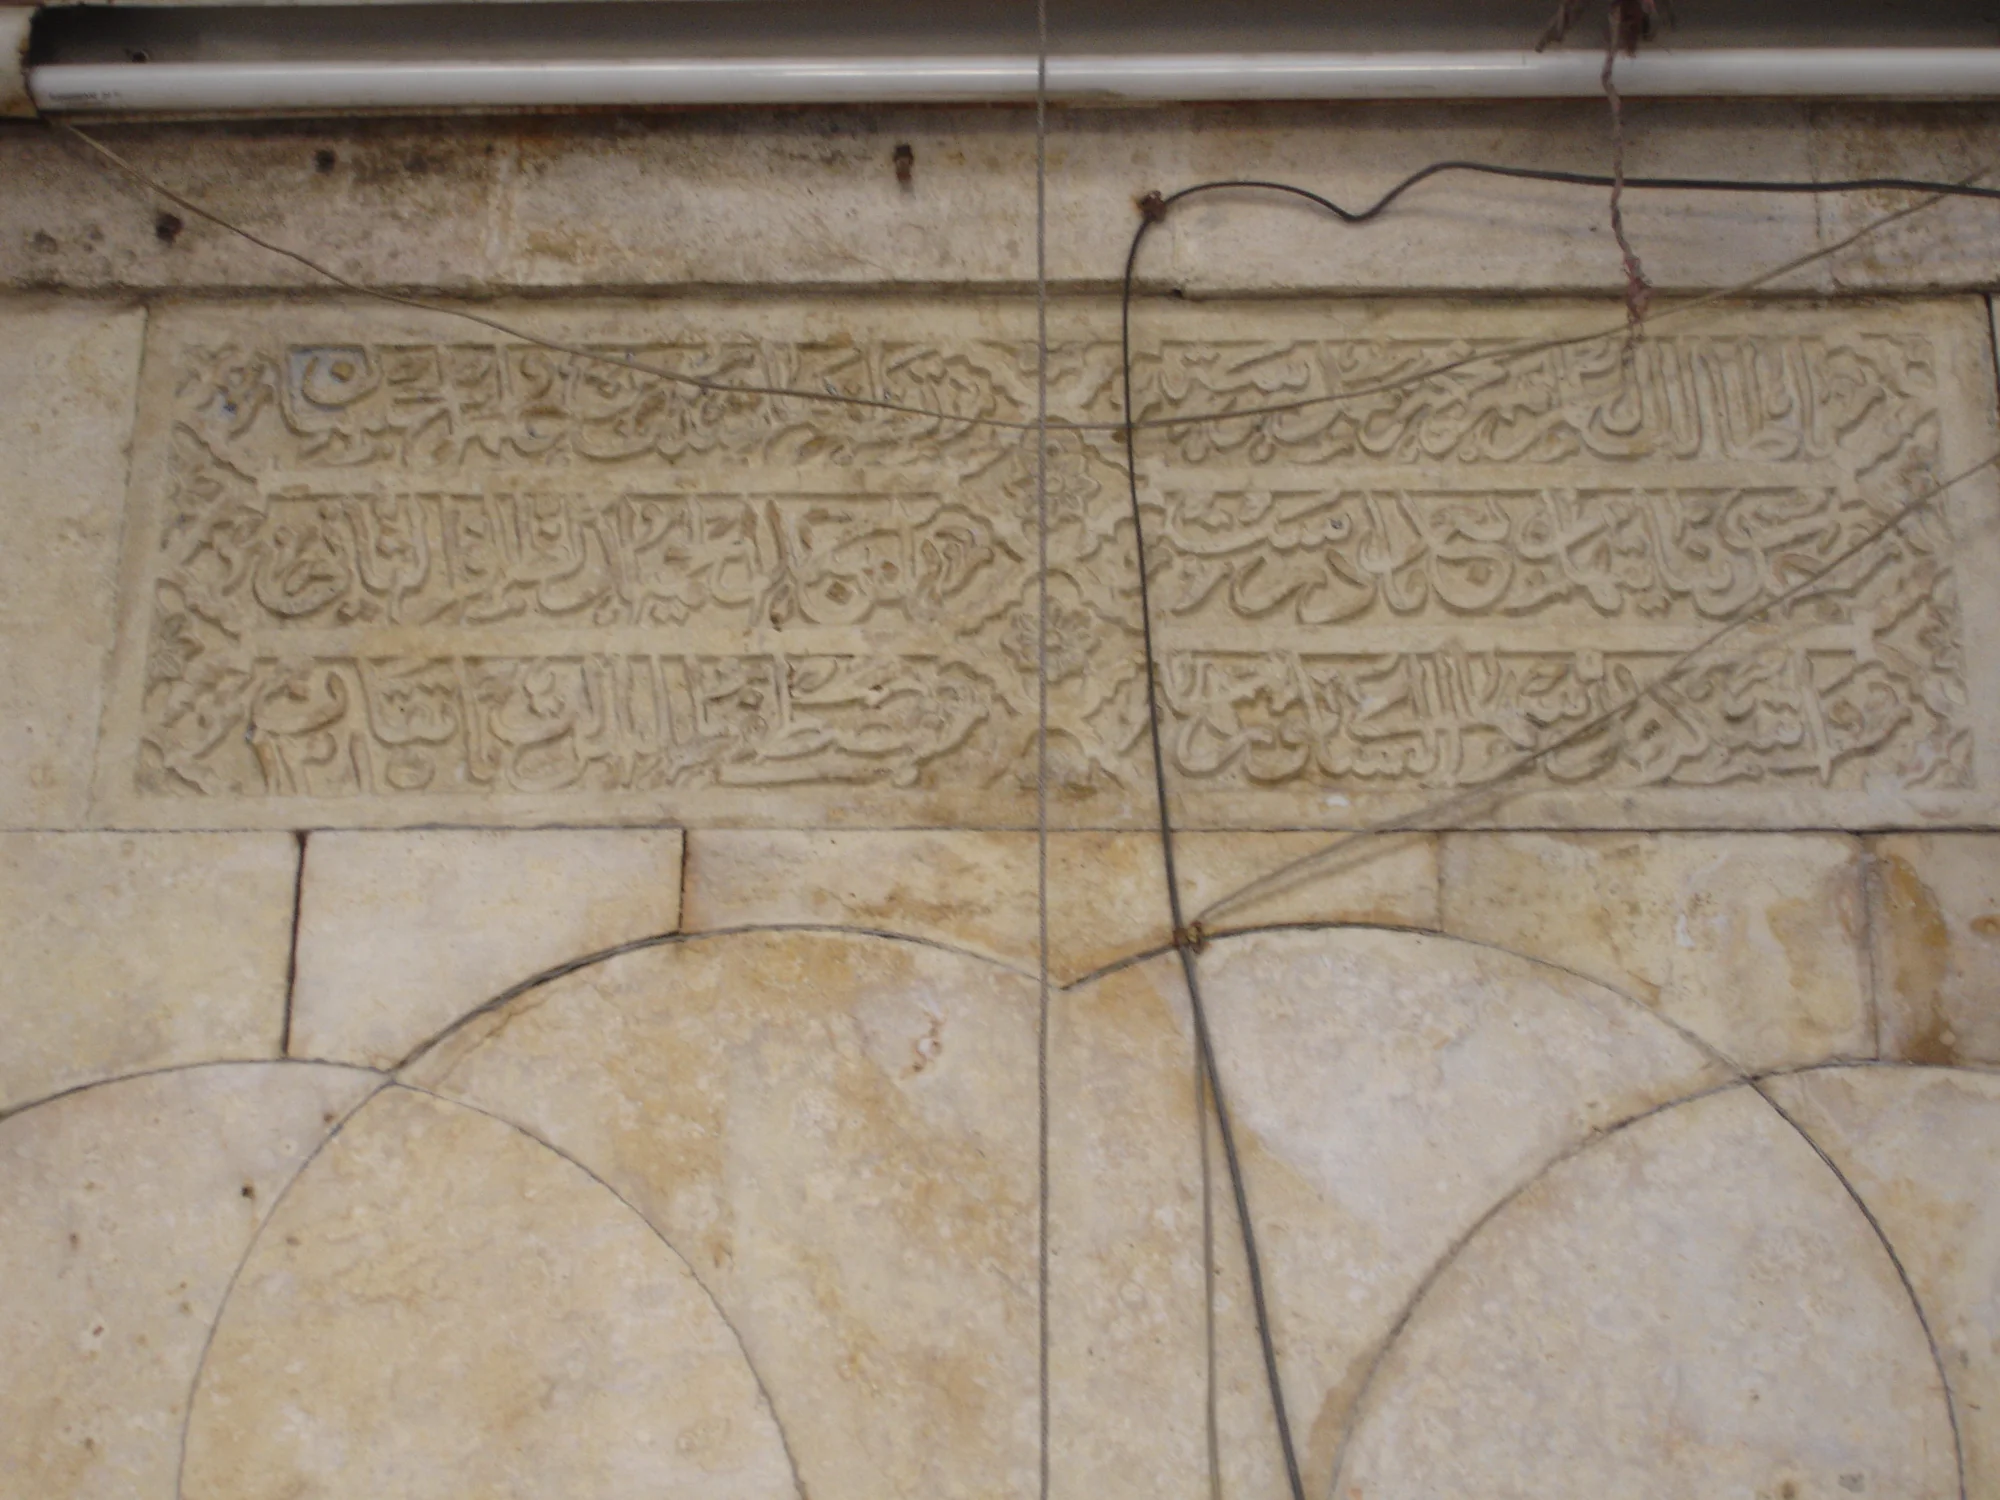 المدرسة الحلوية، البوابة الخارجية - النص الكتابي فوق يعود للفترة العثمانية